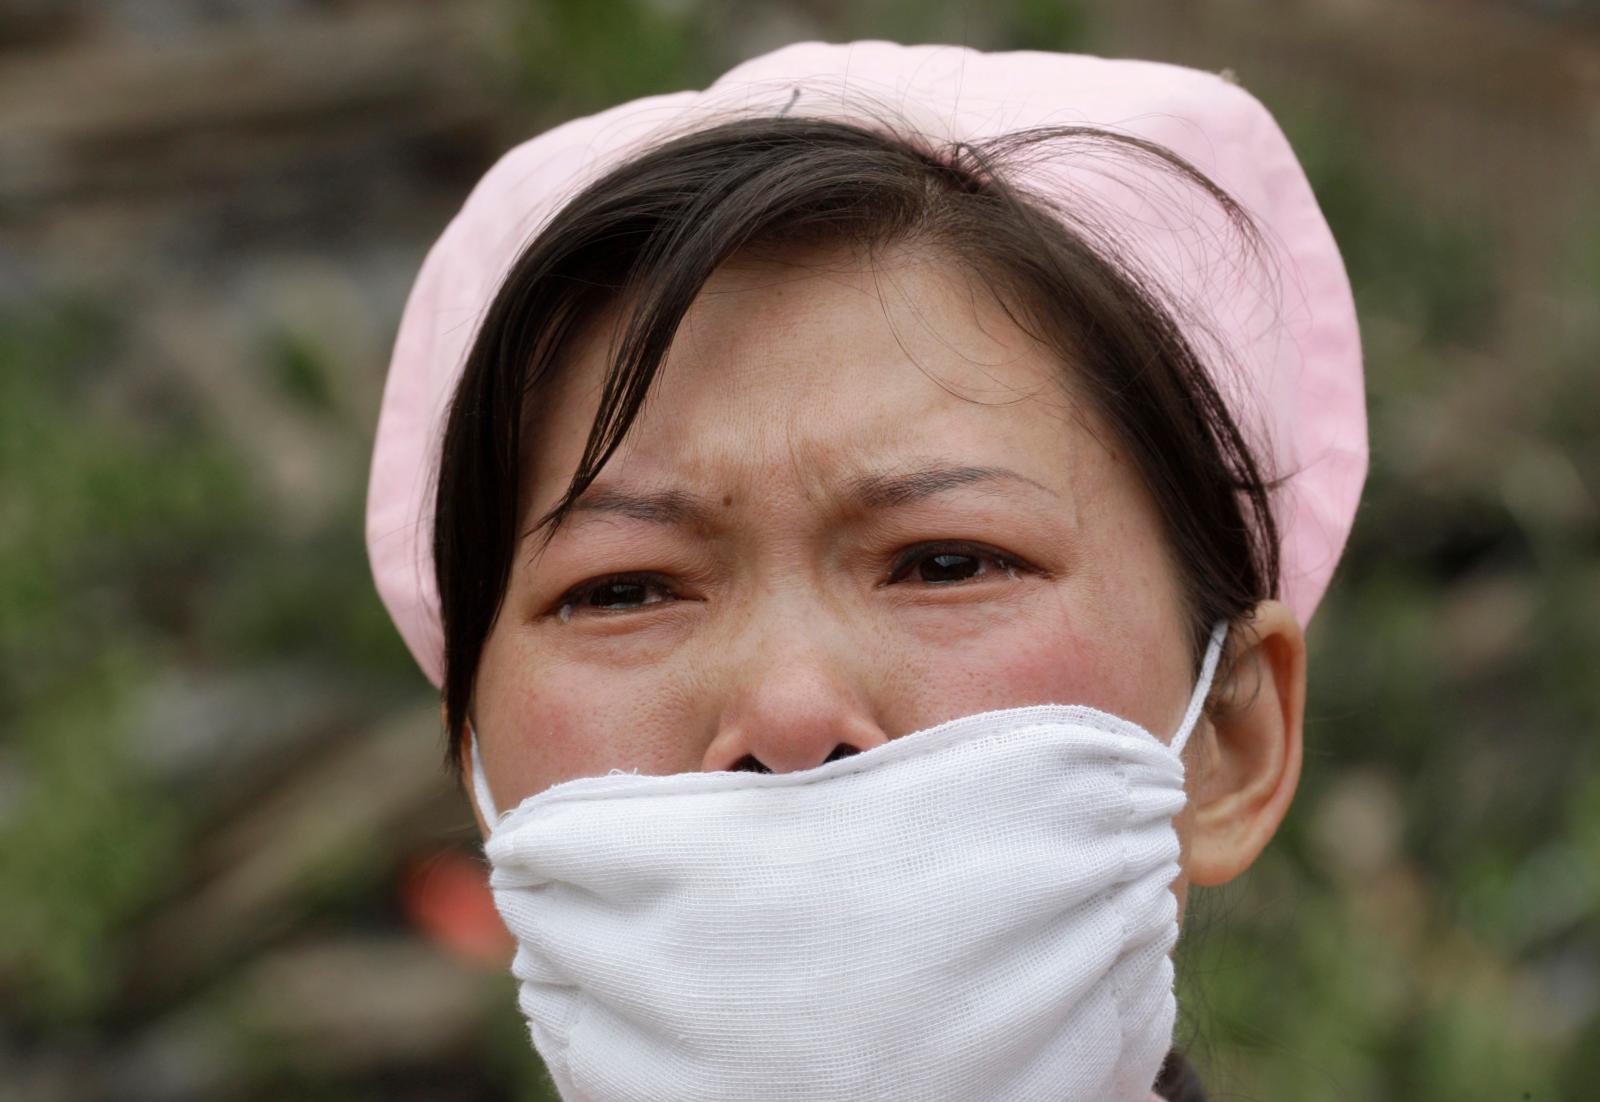 Một nữ y tá và 3 thành viên trong gia đình nhiễm Covid-19 lần lượt tử vong ở thành phố Vũ Hán, Trung Quốc. Ảnh minh họa: Reuters